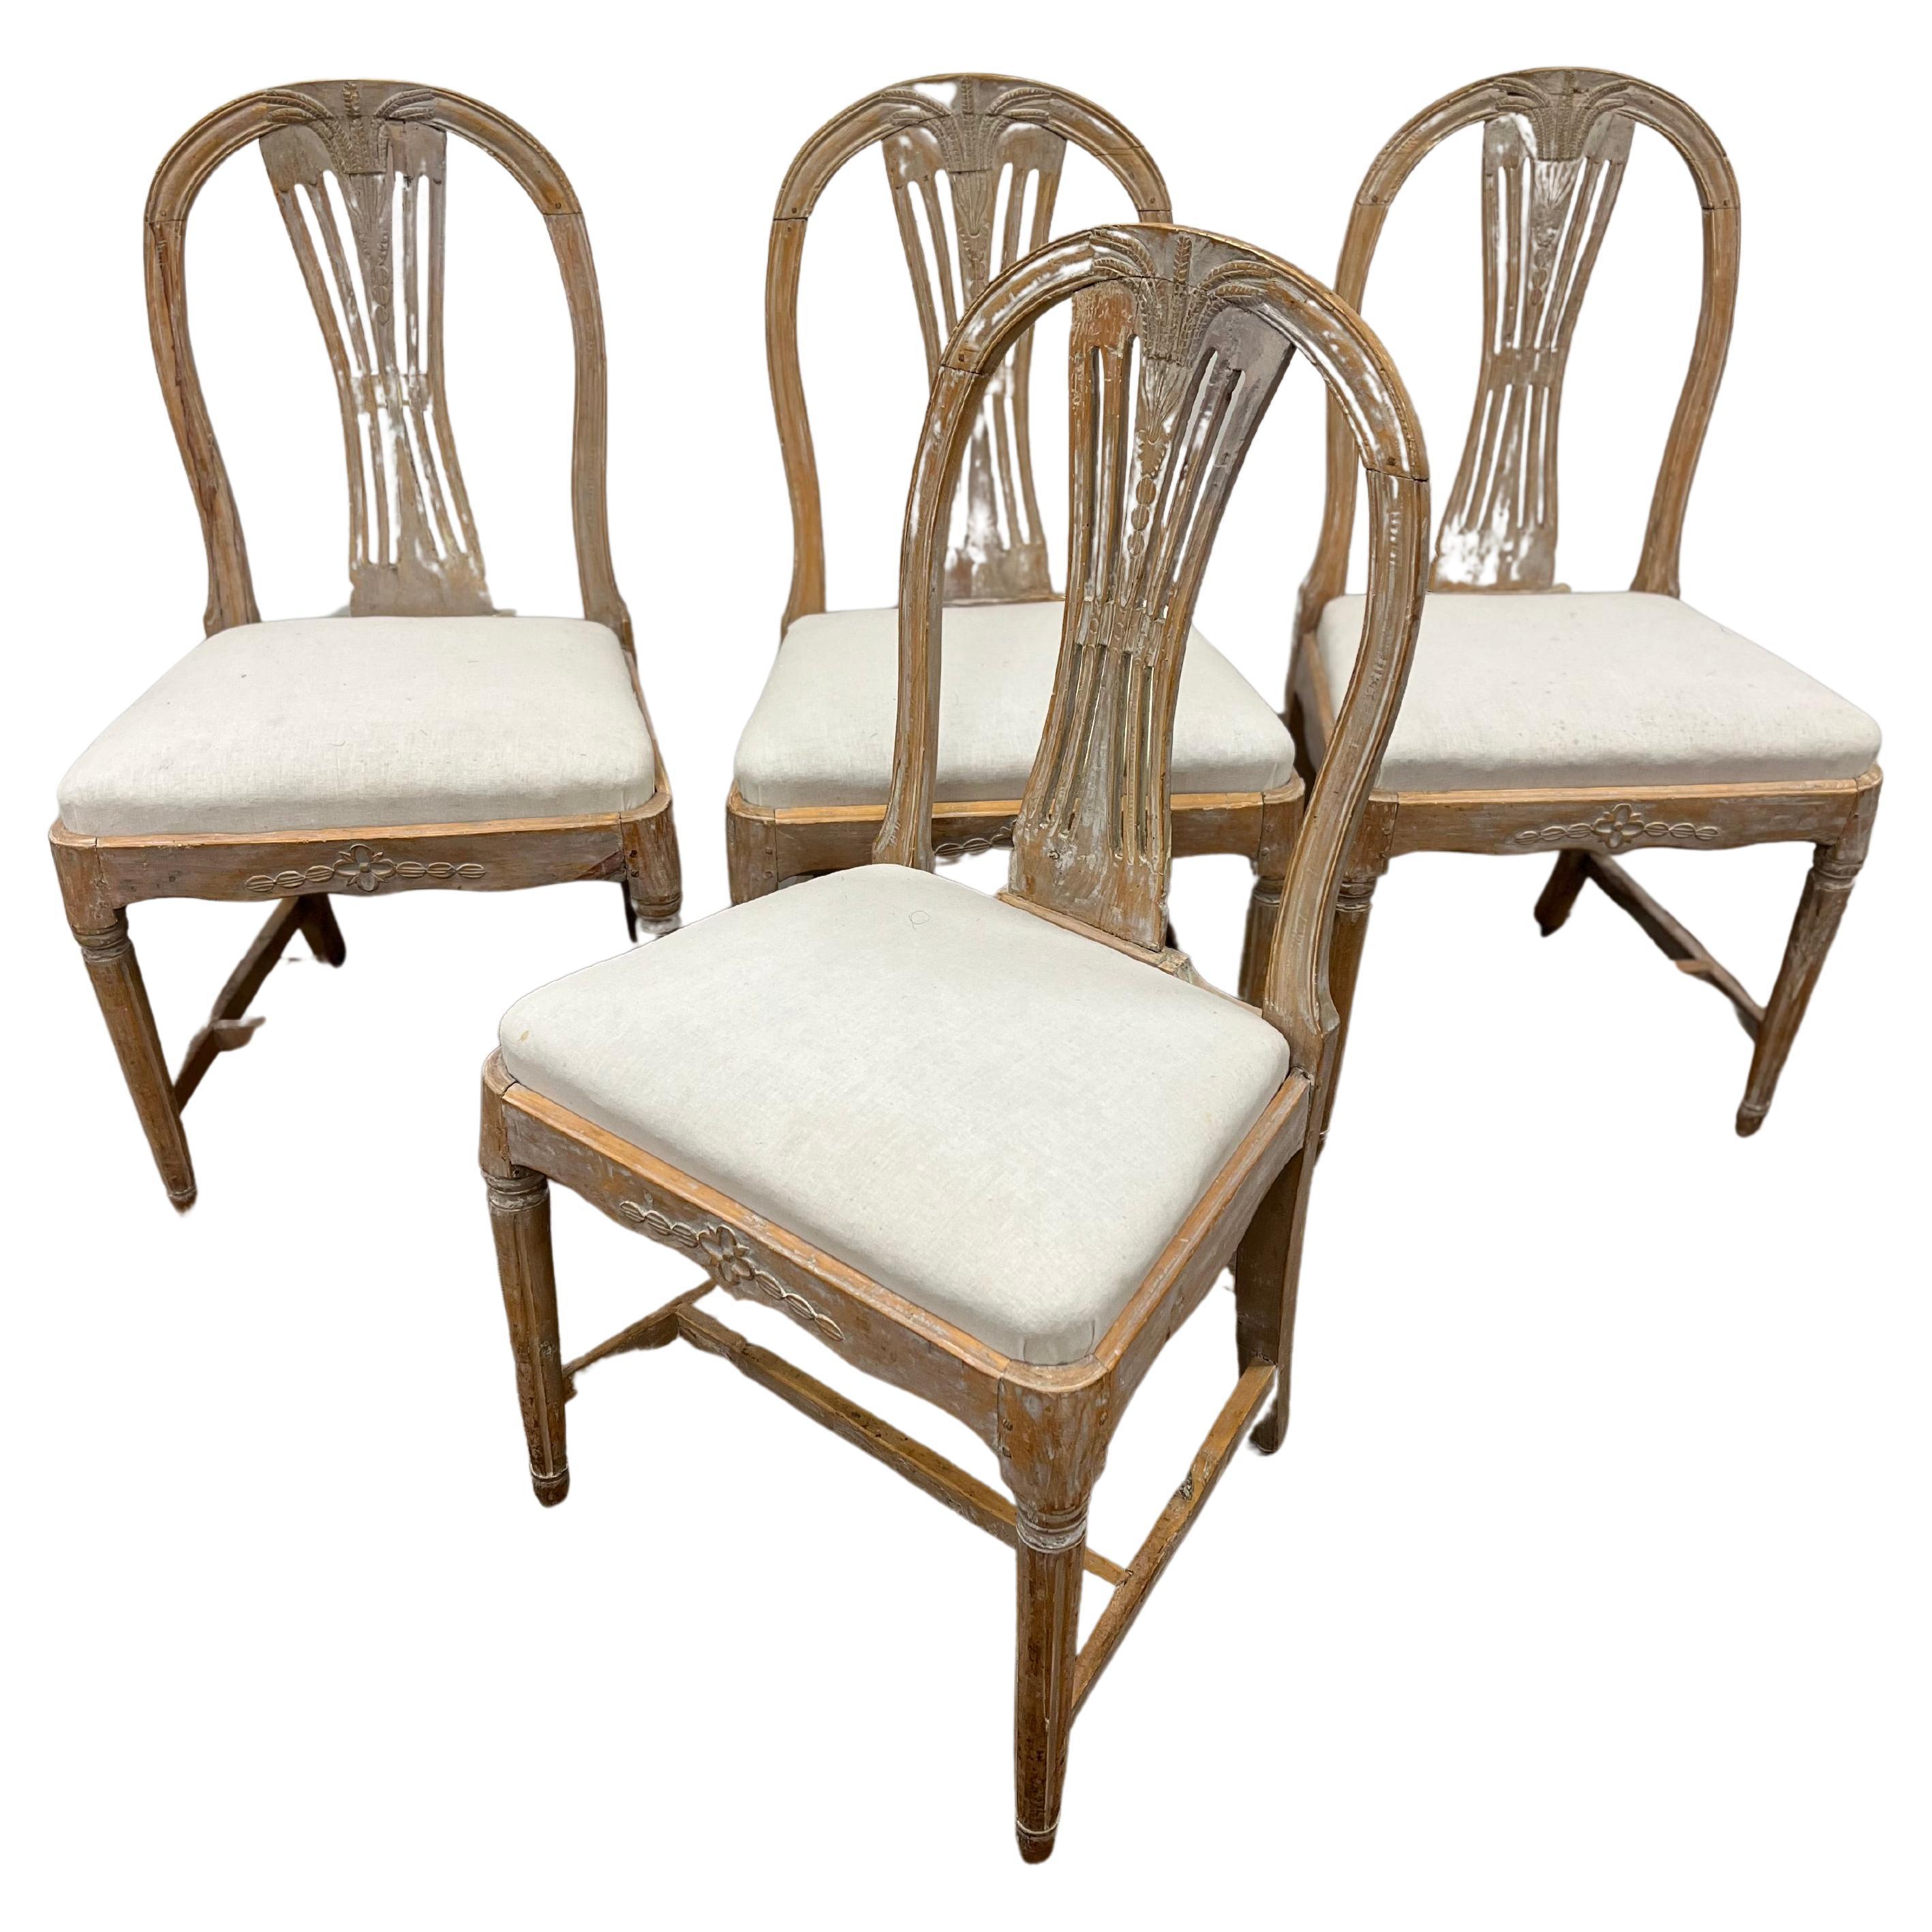 Ensemble de quatre chaises suédoises de la fin de la période gustavienne du XIXe siècle